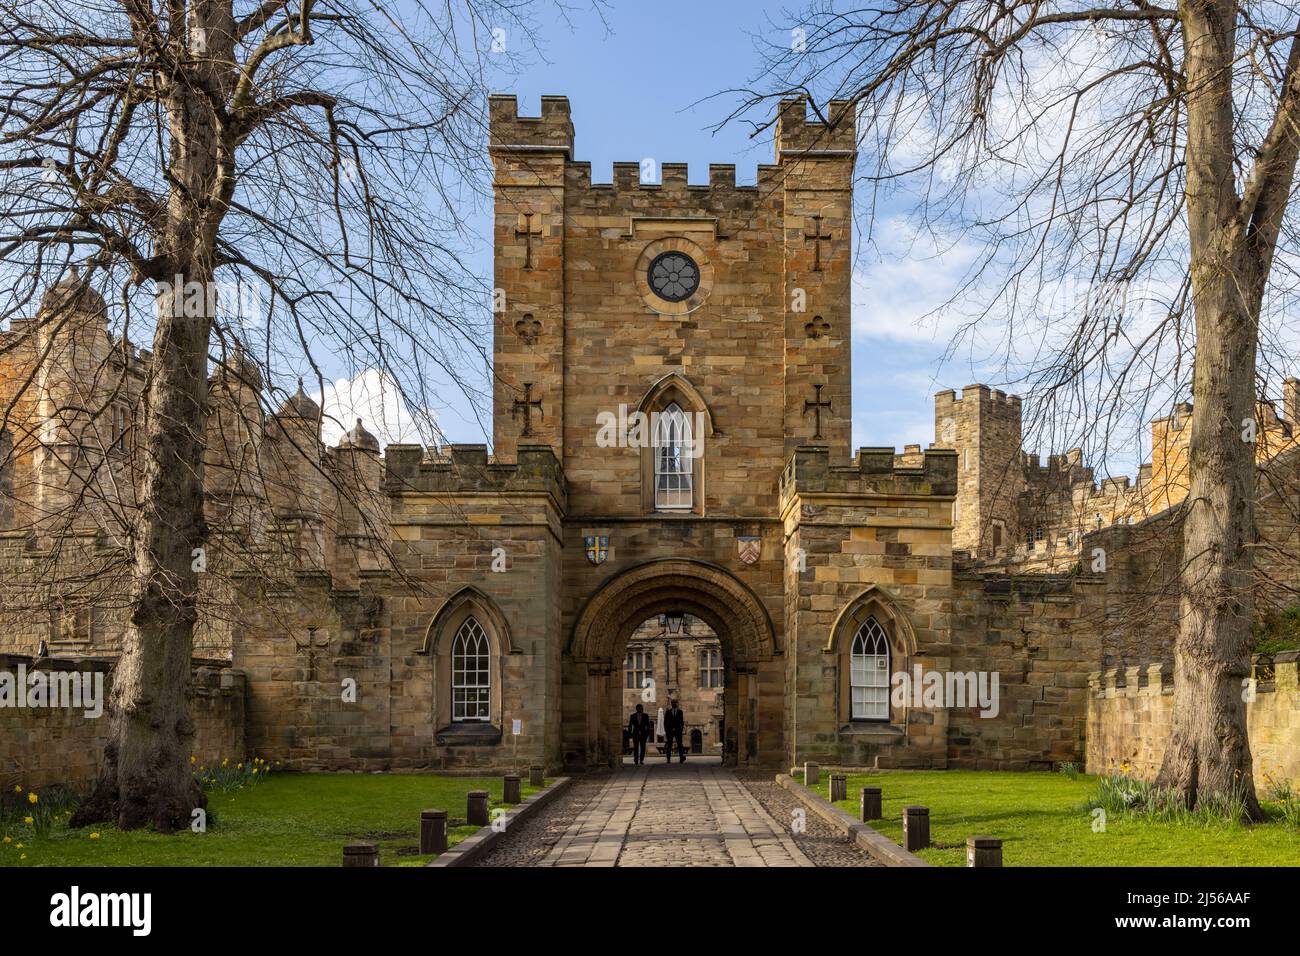 Der Eingang zum Durham Castle, einem normannischen Schloss in der Stadt Durham, England, das seit 1837 vom University College, Durham, besetzt ist. Stockfoto